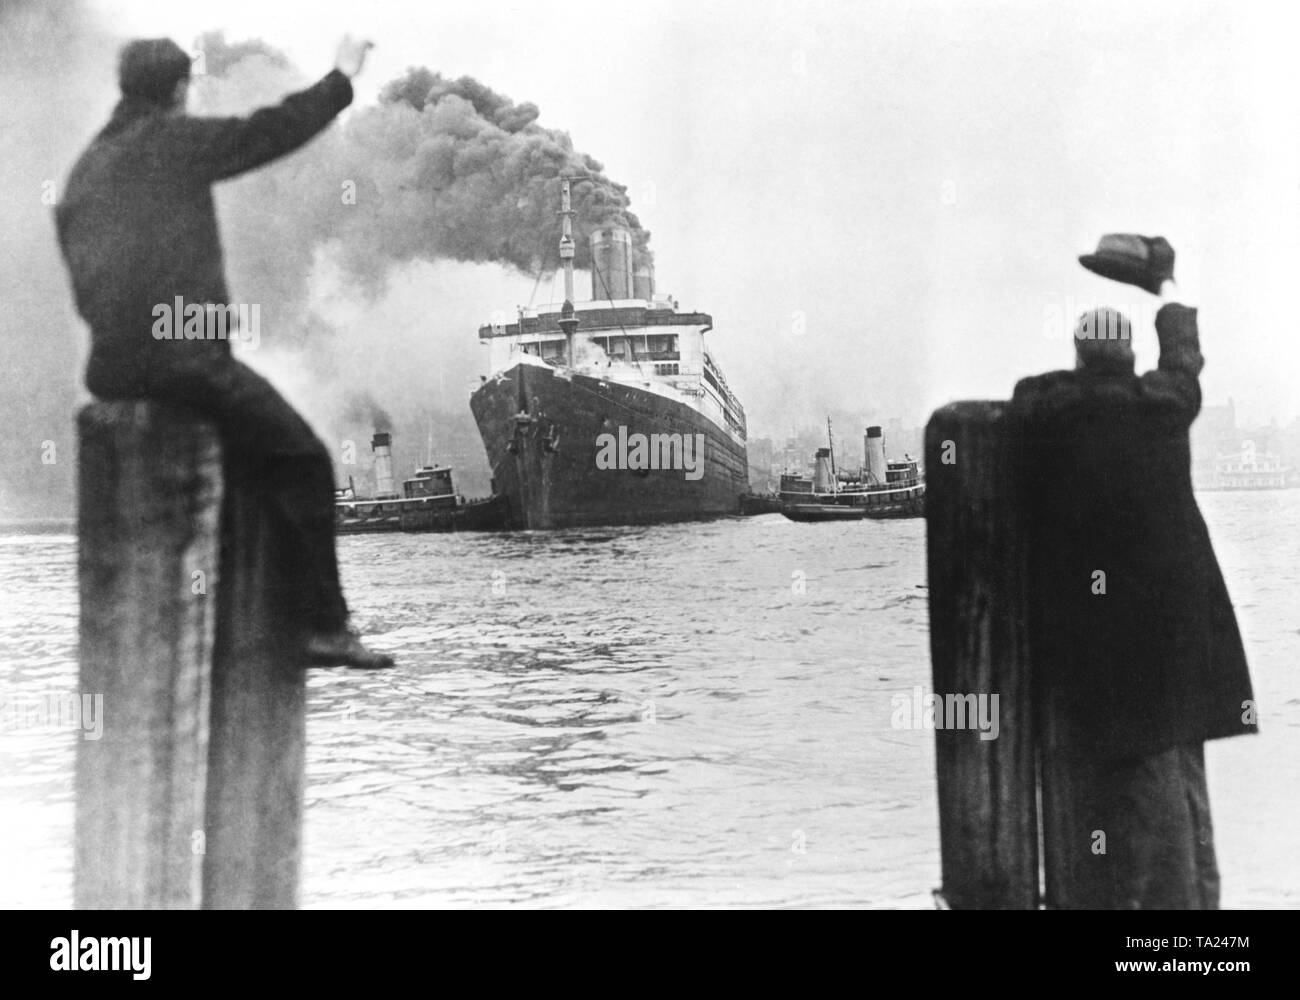 L 'Leviathan', construit en 1913 comme Vaterland, quitte le port de New York pour la dernière fois. Le 14 février, le navire est arrivé dans Rosyth en Ecosse et a été mis au rebut. Banque D'Images